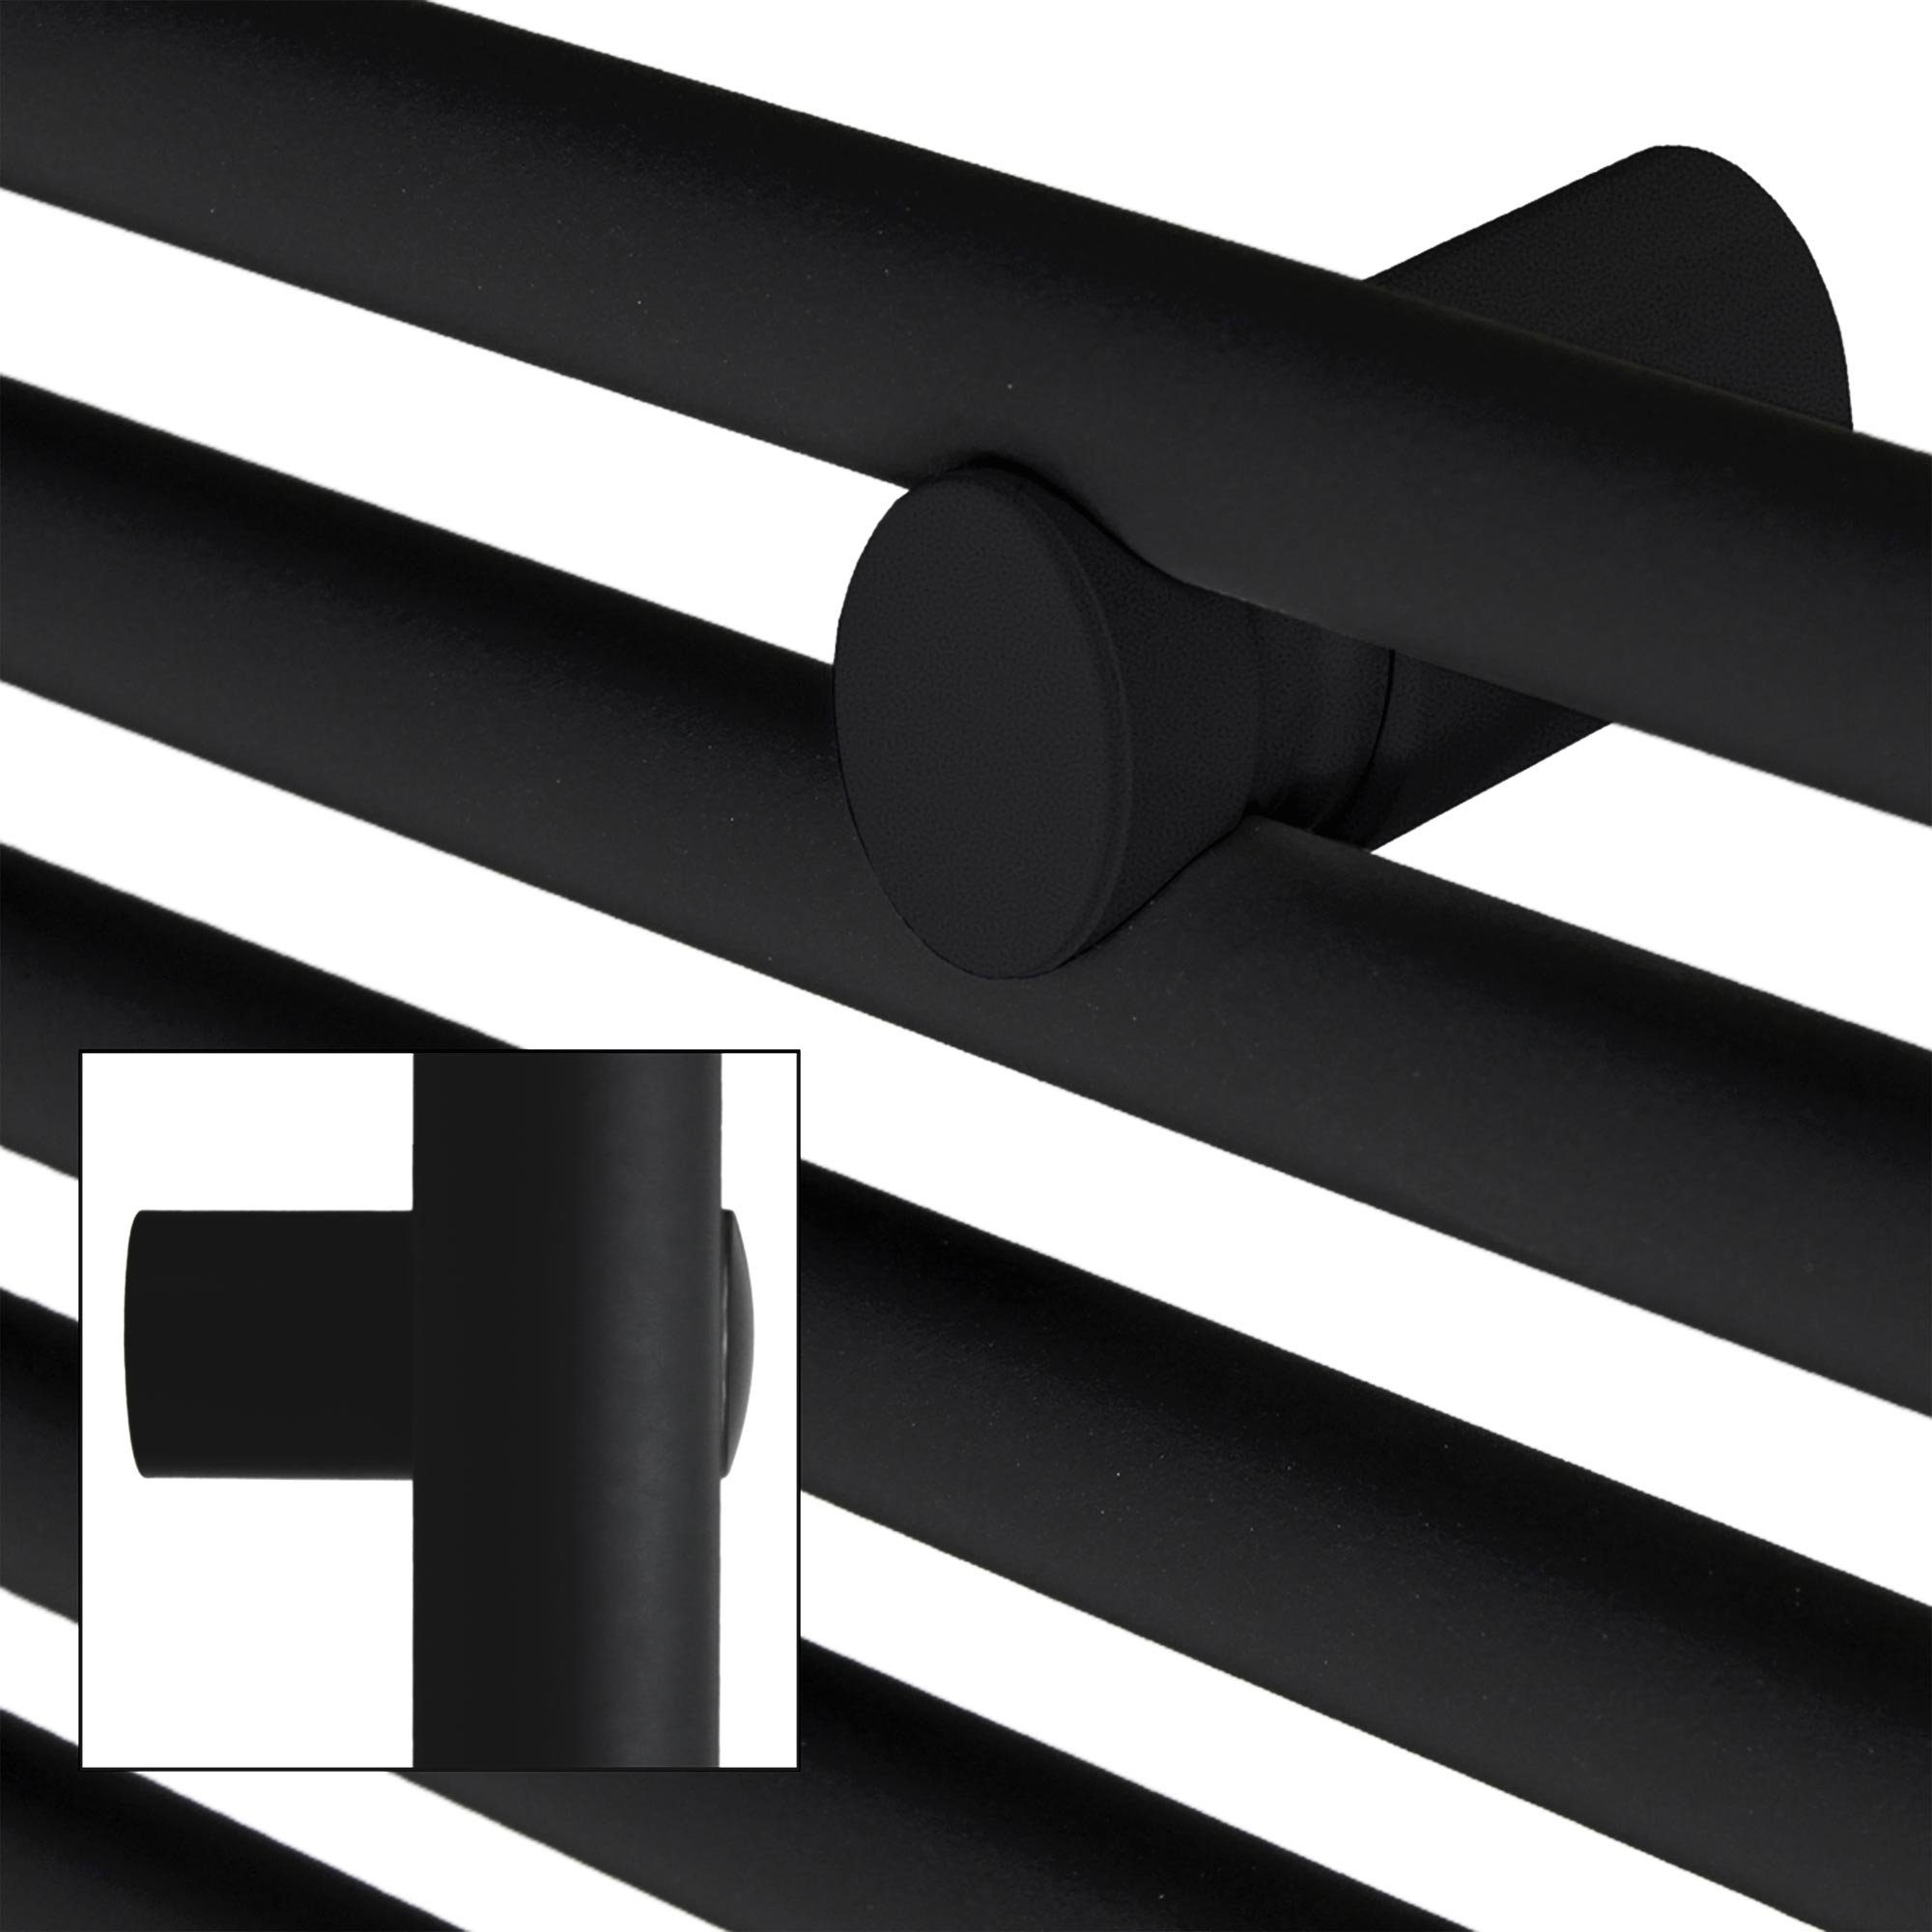 LuxeBath Badheizkörper matt Schwarz Seitenanschluss Handtuchwärmer mit 500x1500mm Handtuchtrockner, Sahara gebogen Designheizkörper